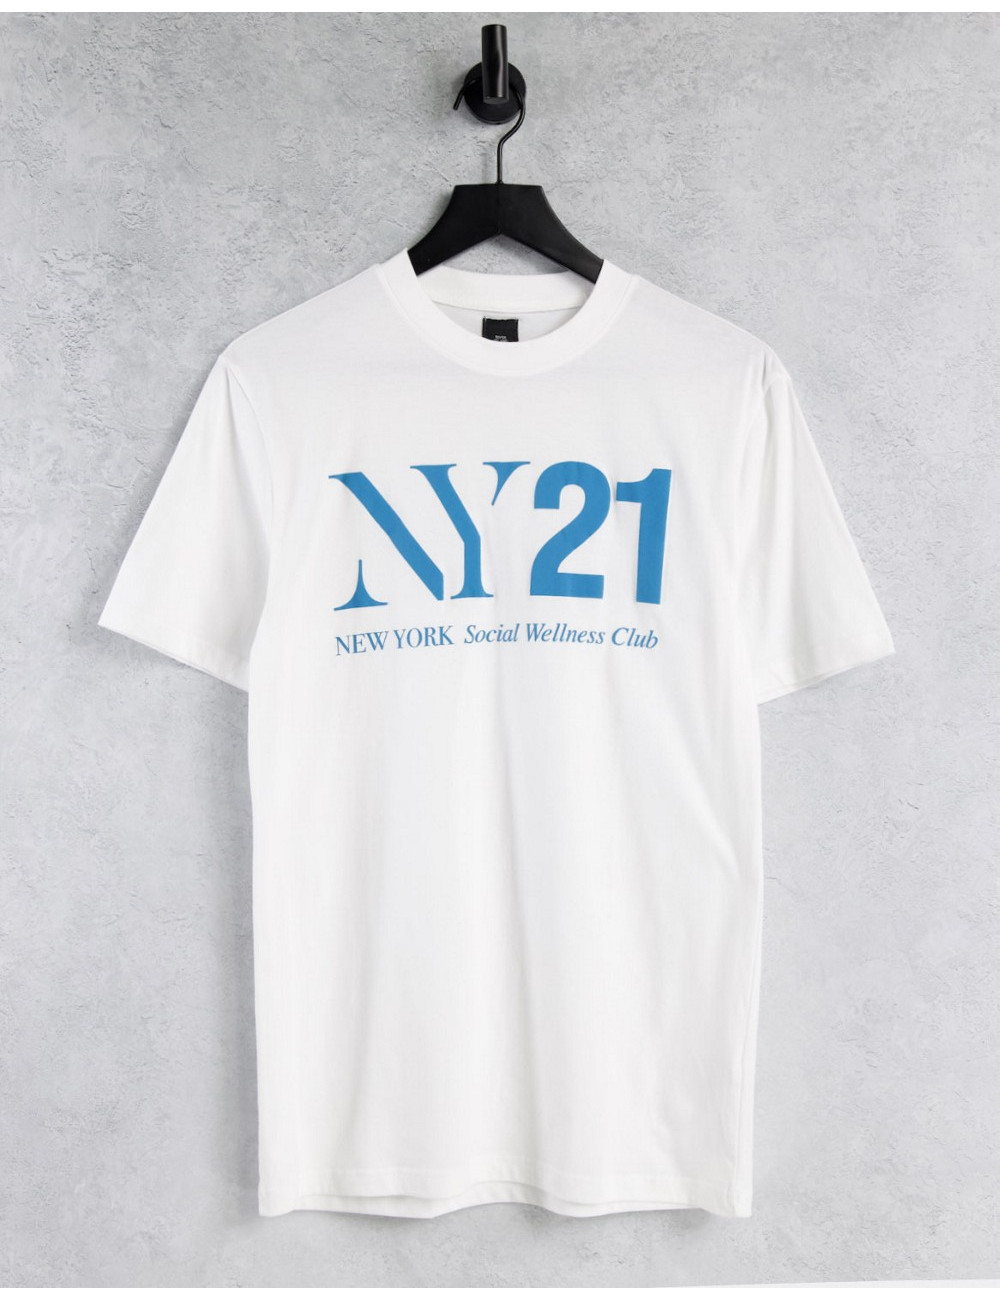 River Island NY21 t-shirt...